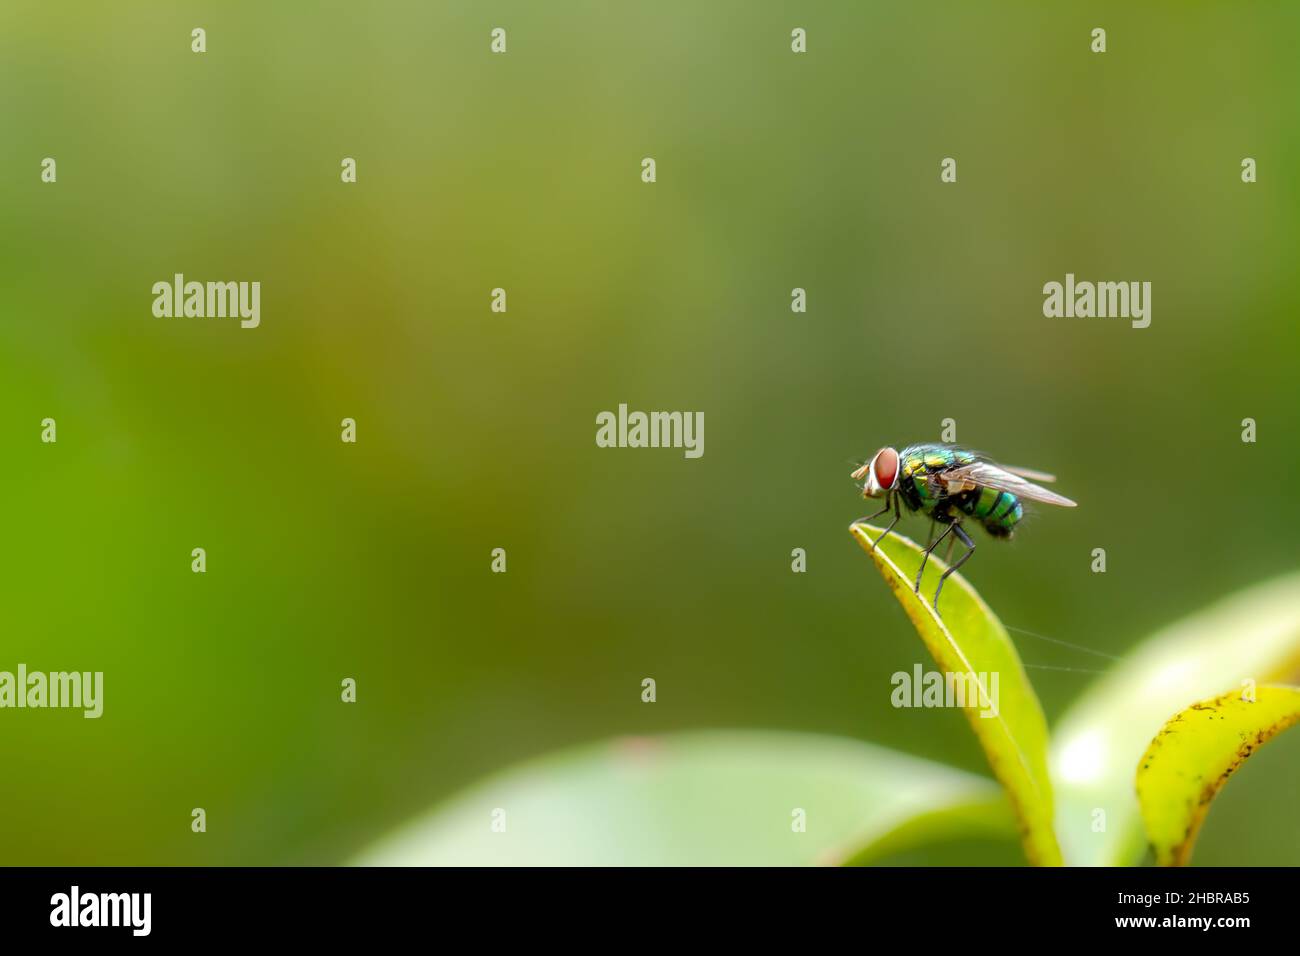 Une mouche perche sur la pointe d'une jeune feuille verte d'une plante saponilla, feuillage vert flou, thème de la nature Banque D'Images